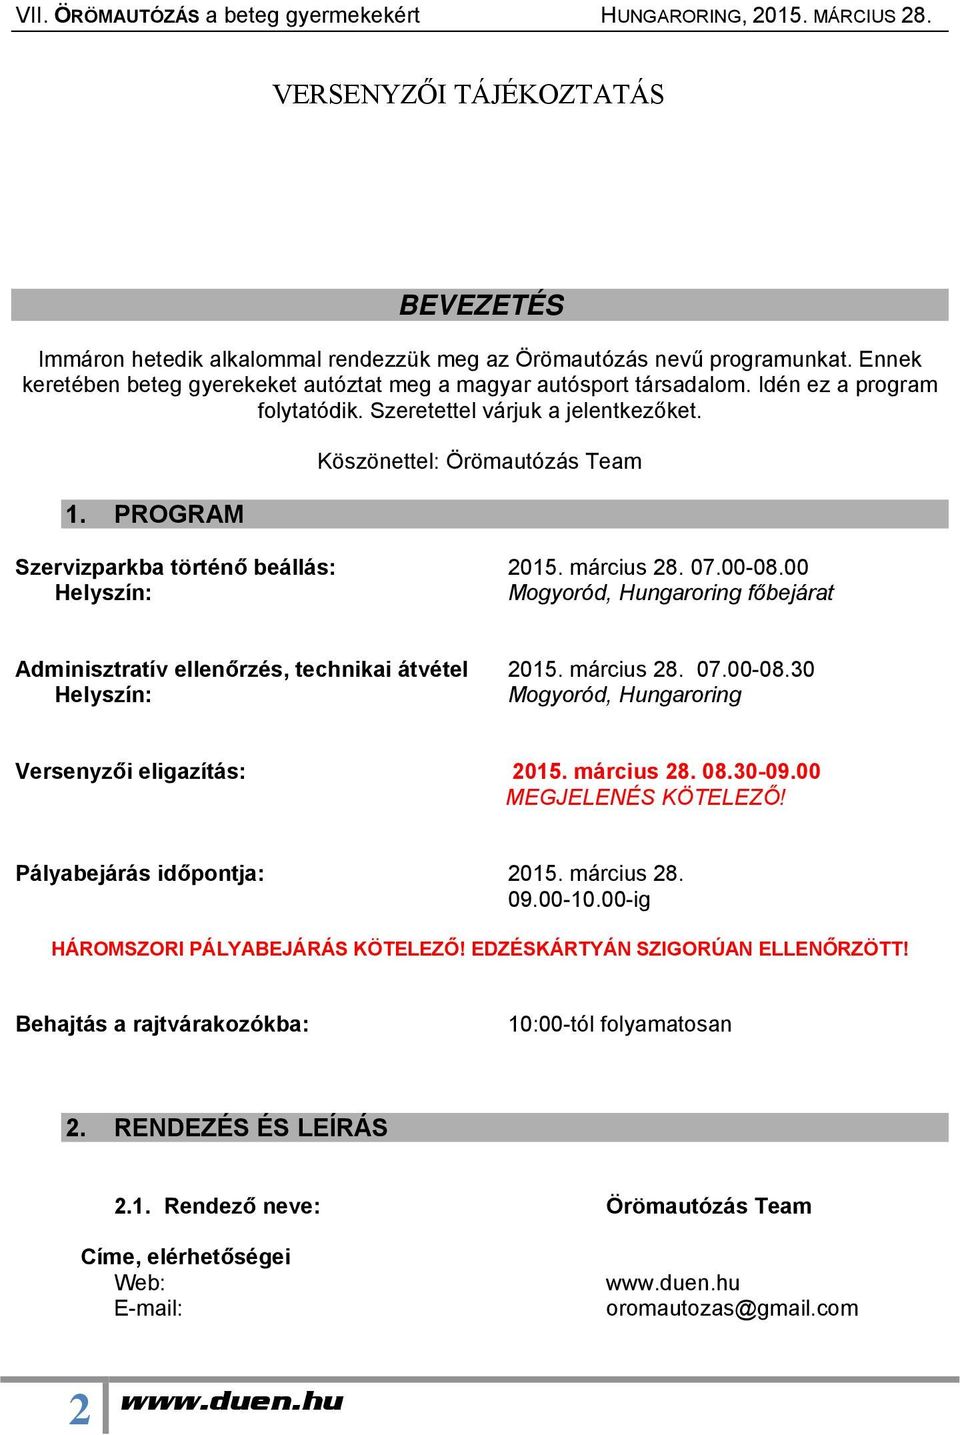 00 Helyszín: Mogyoród, Hungaroring főbejárat Adminisztratív ellenőrzés, technikai átvétel 2015. március 28. 07.00-08.30 Helyszín: Mogyoród, Hungaroring Versenyzői eligazítás: 2015. március 28. 08.